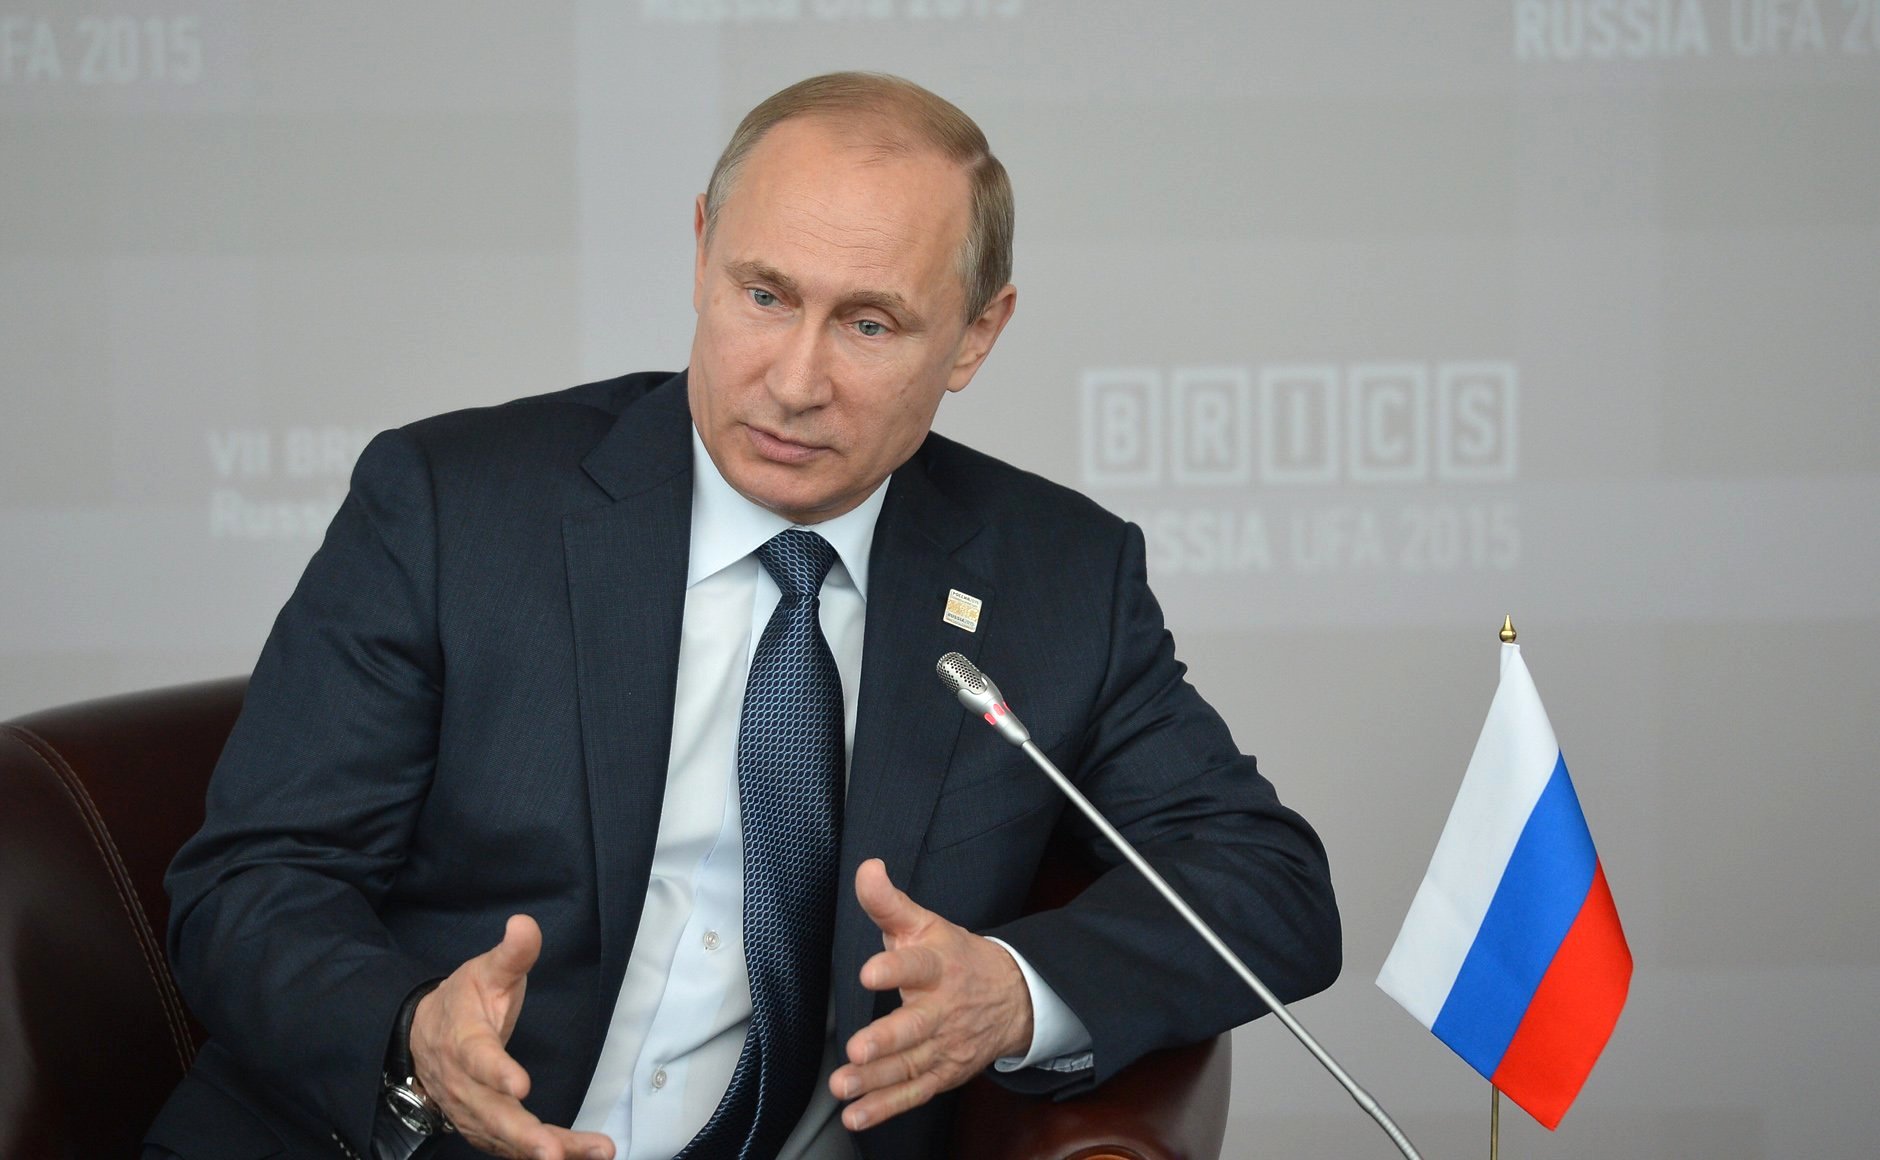 Vox указал на 5 слабых мест власти Путина